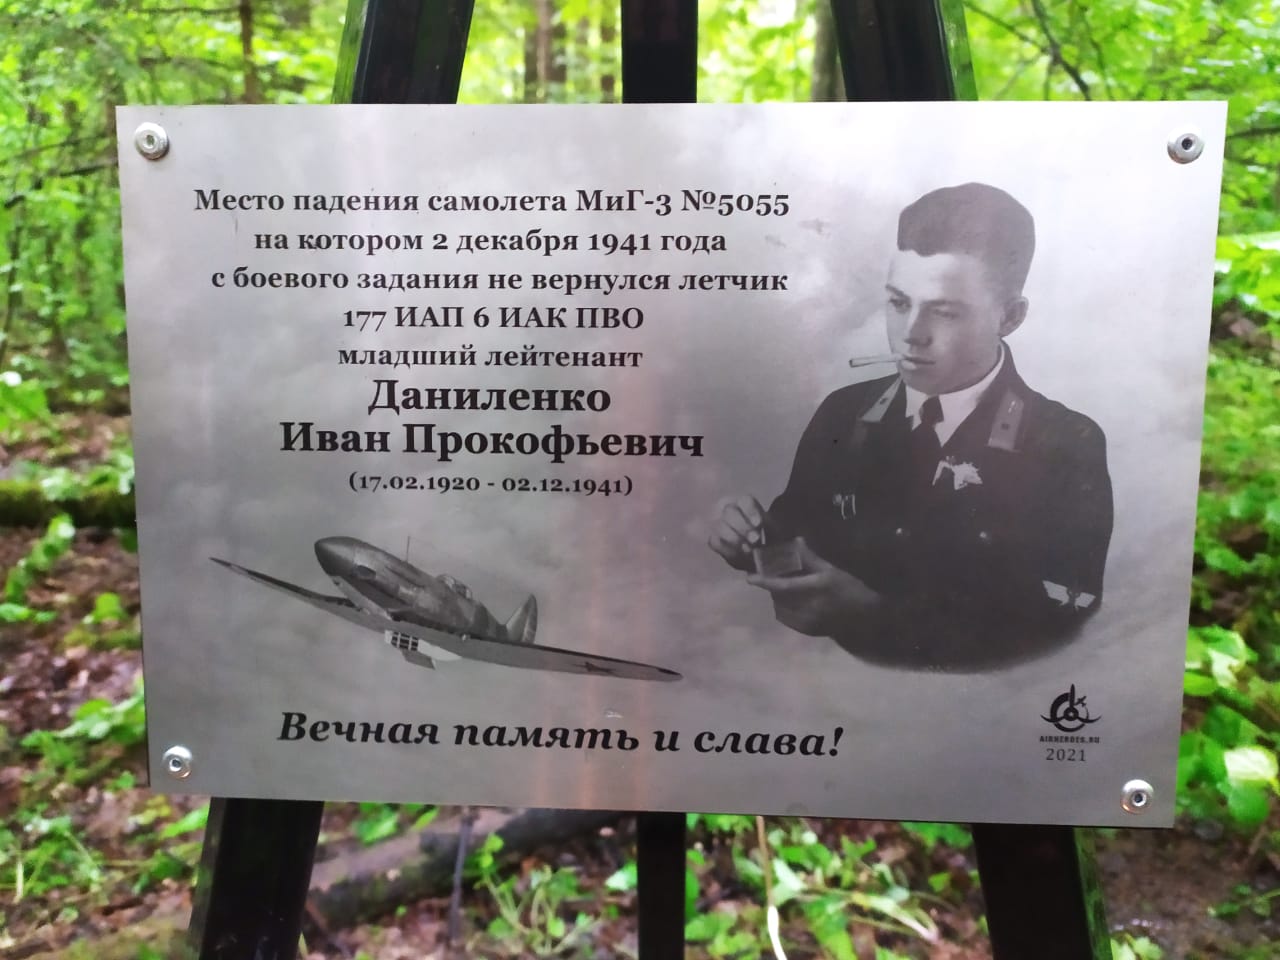 В Наро-Фоминском районе Московской области установлен памятный знак летчику Даниленко